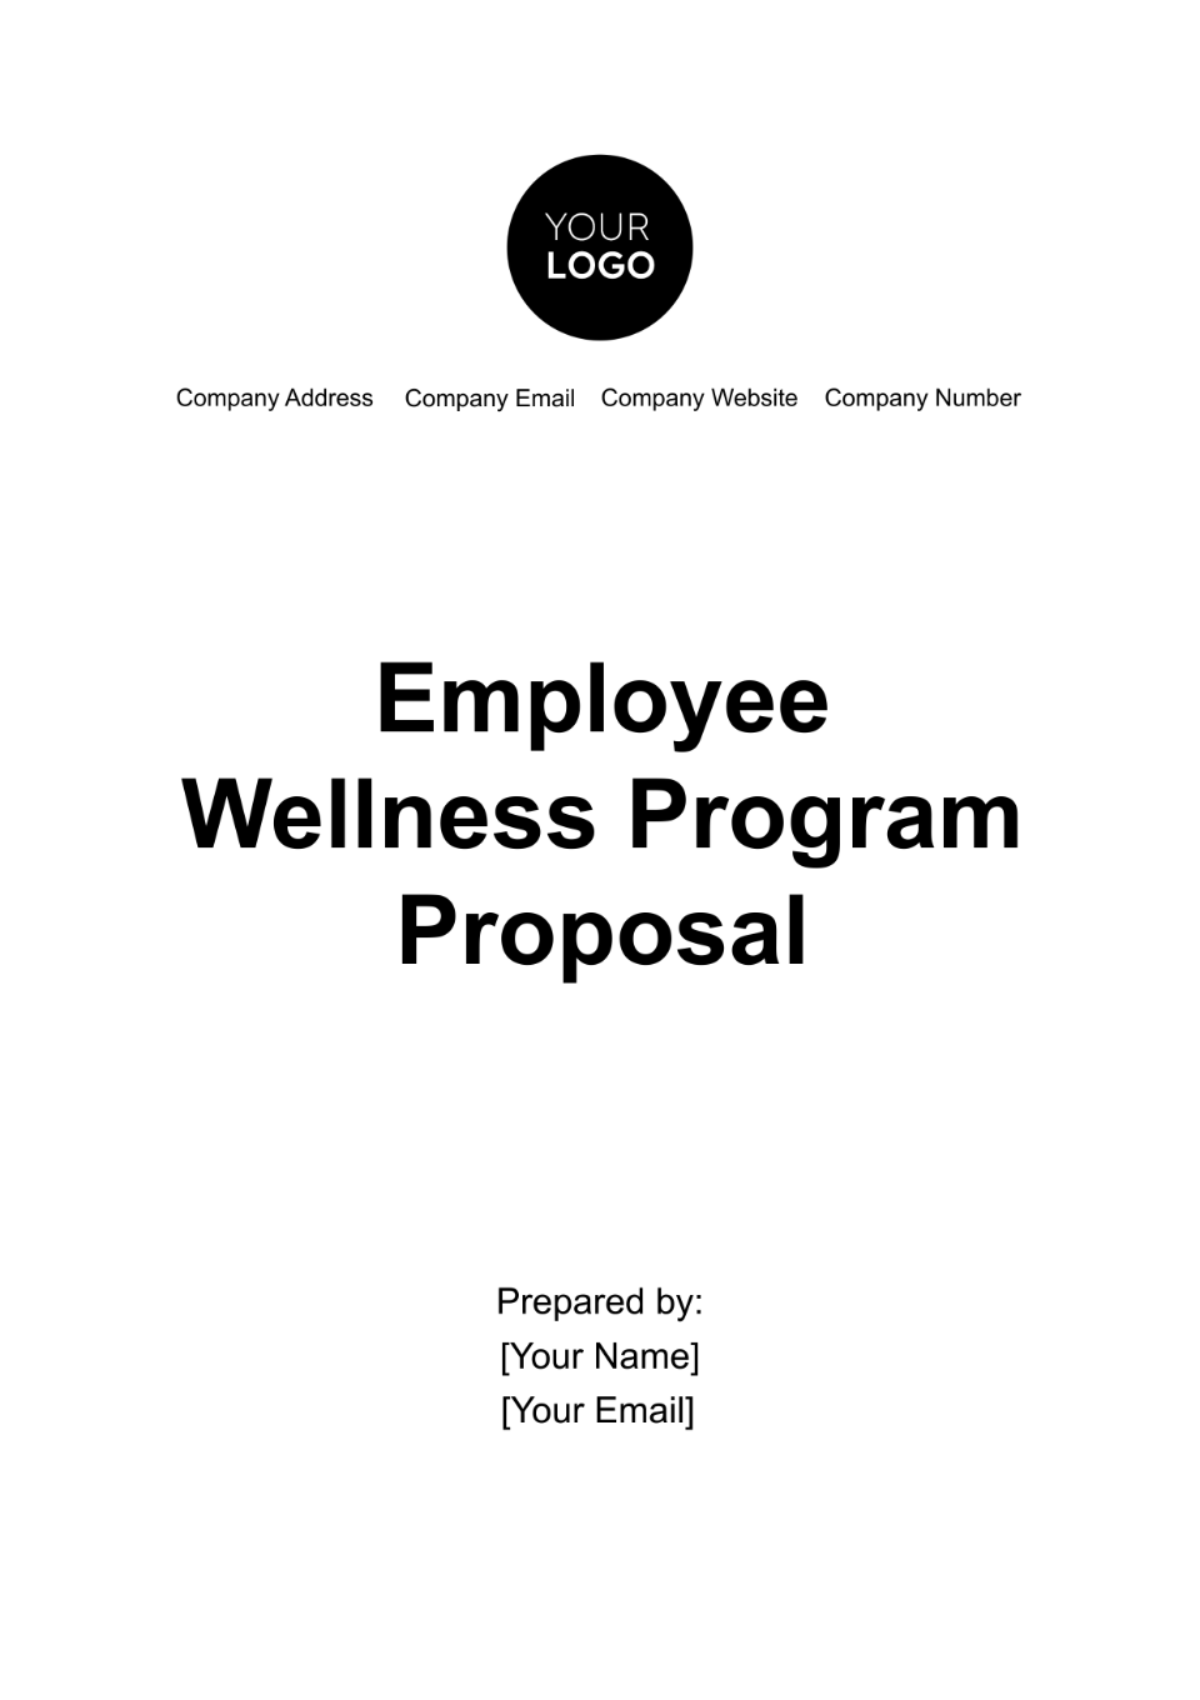 Employee Wellness Program Proposal Template